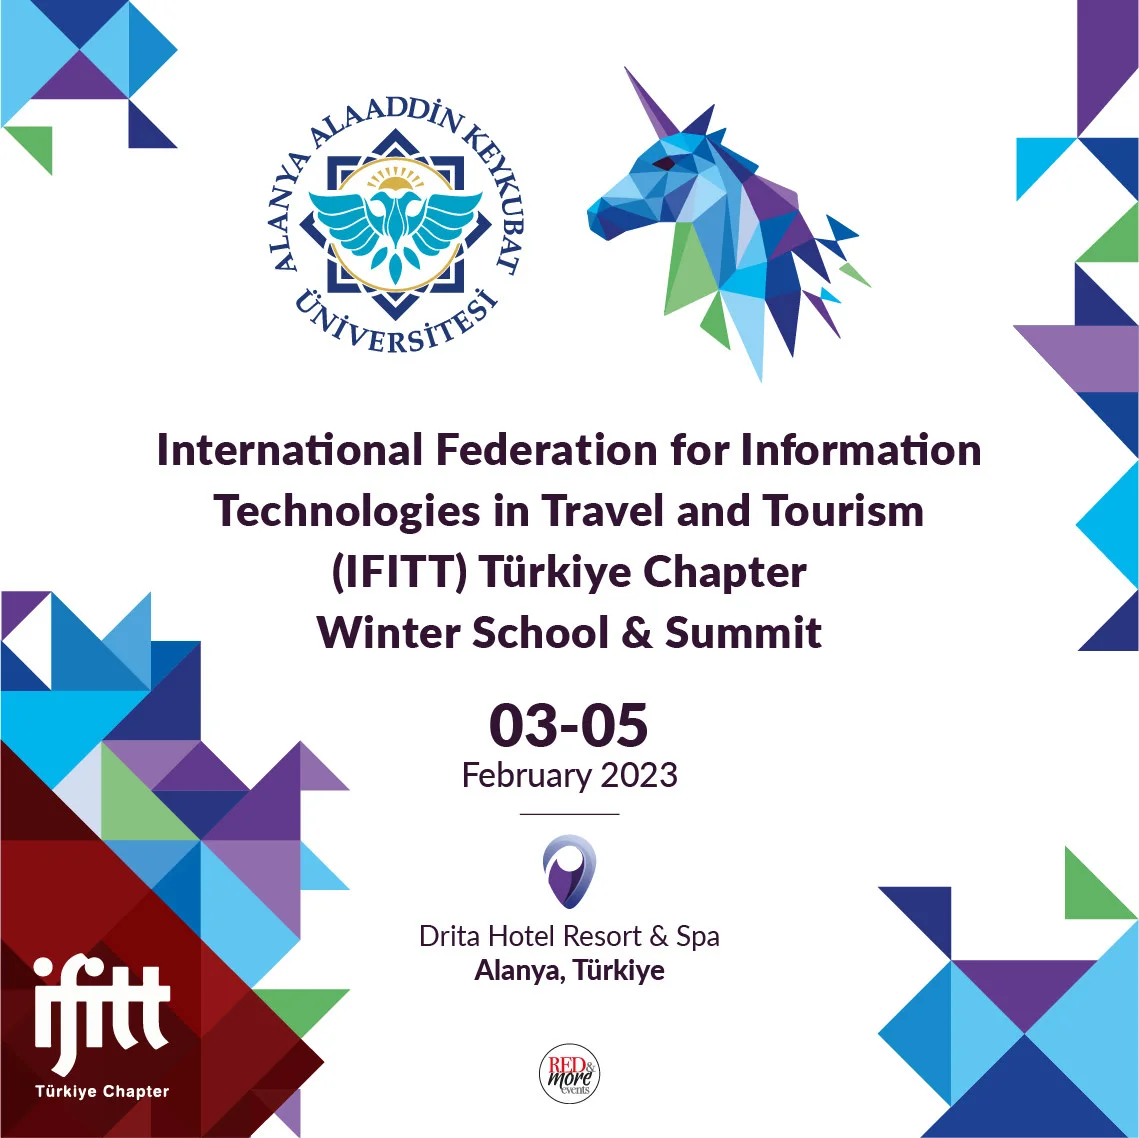 IFITT Türkiye Chapter Winter School & Summit